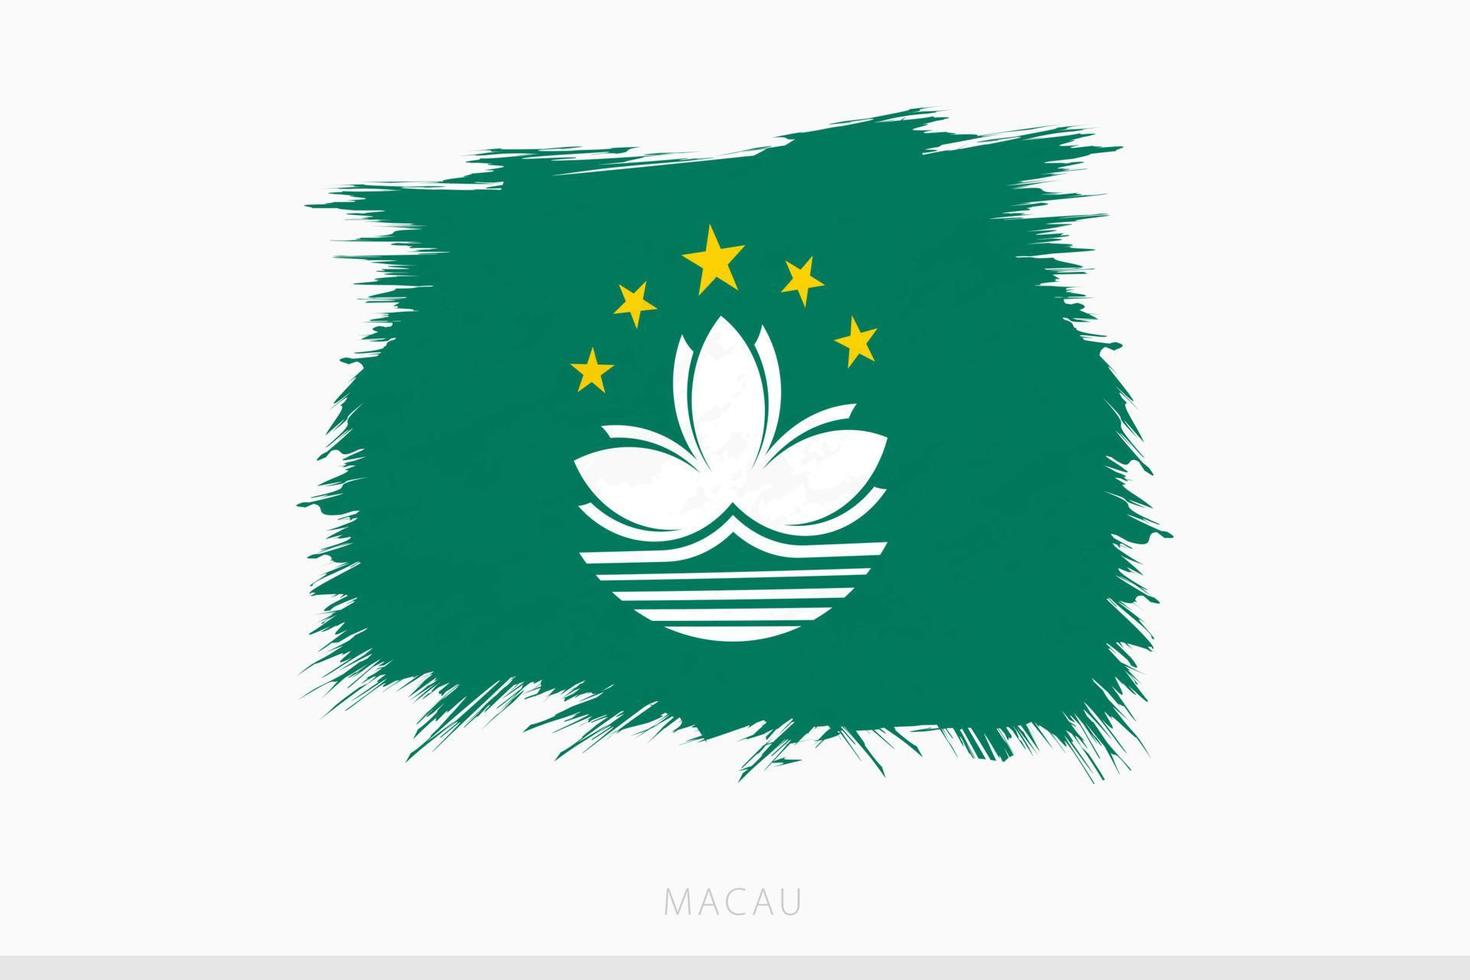 grunge drapeau de macao, vecteur abstrait grunge brossé drapeau de macao.